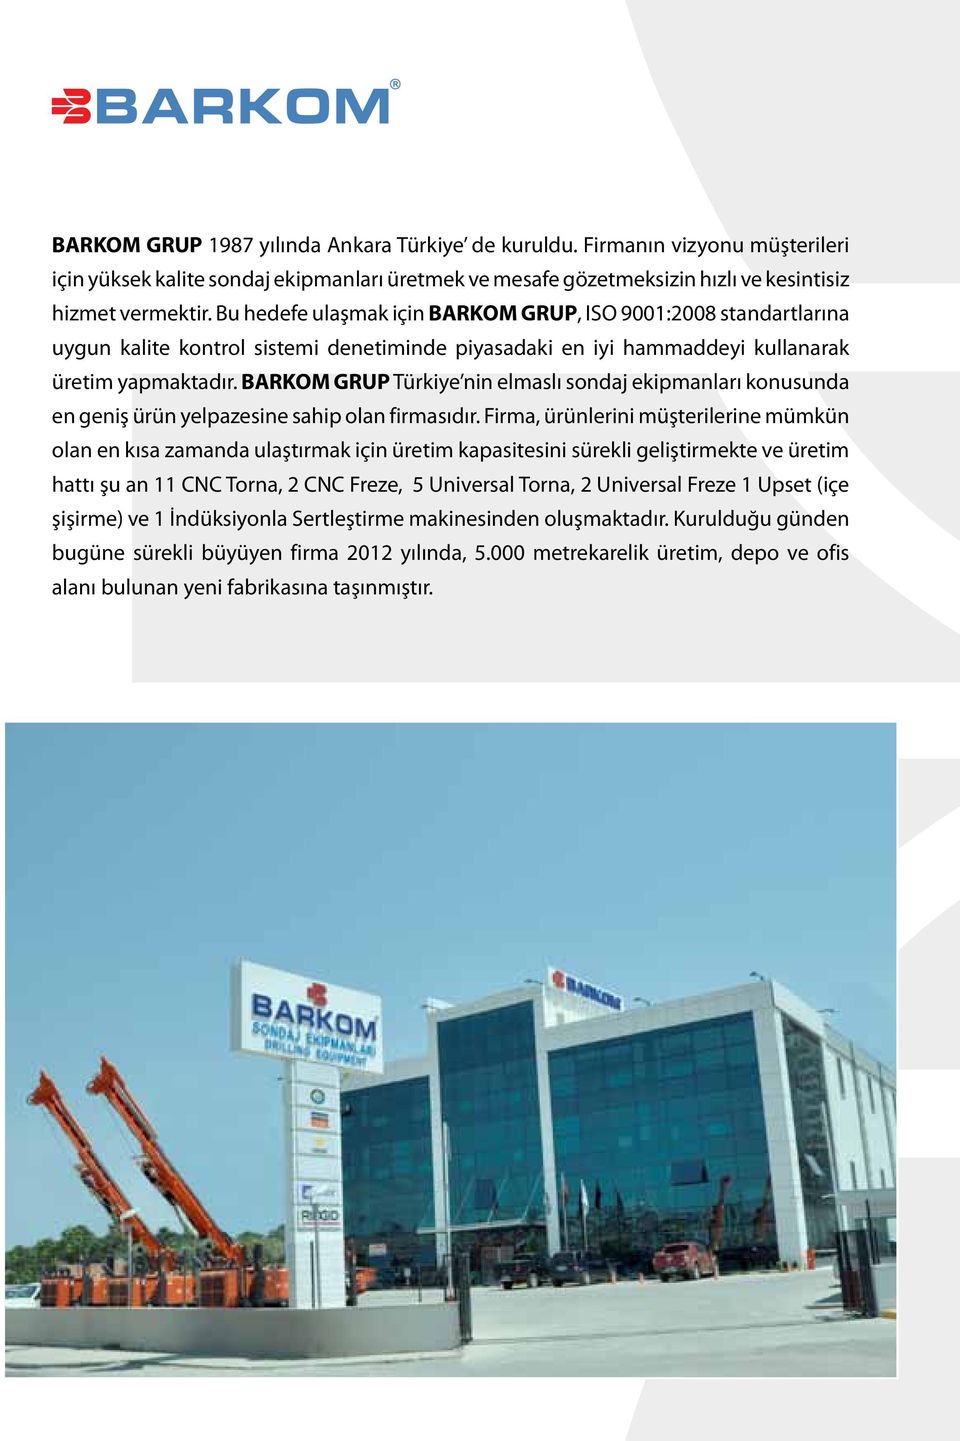 BARKOM GRUP Türkiye nin elmaslı sondaj ekipmanları konusunda en geniş ürün yelpazesine sahip olan firmasıdır.